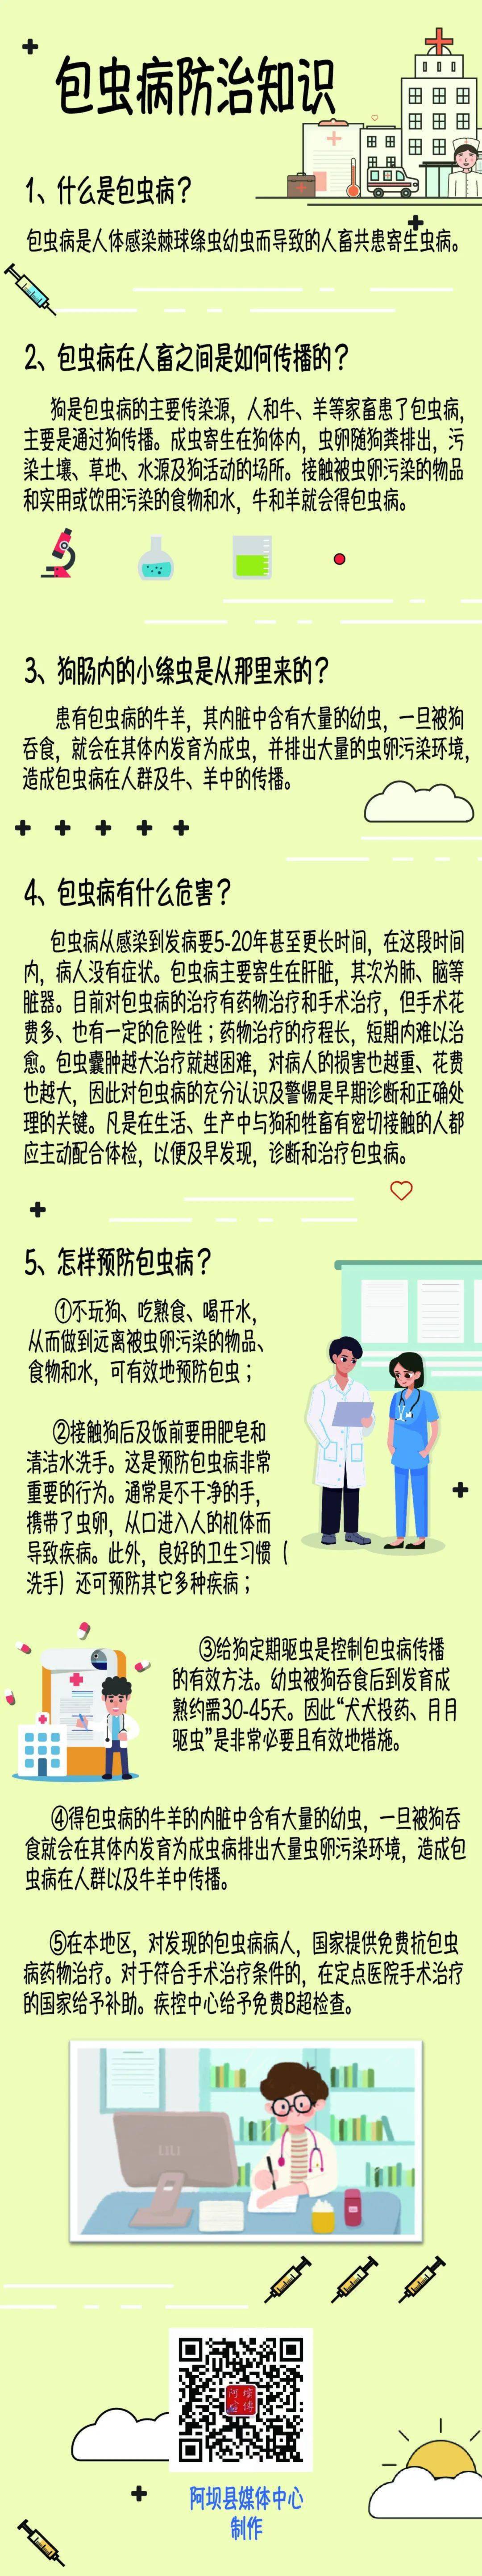 【卫生健康专栏】一图带你看懂包虫病防治知识(藏汉双语版)